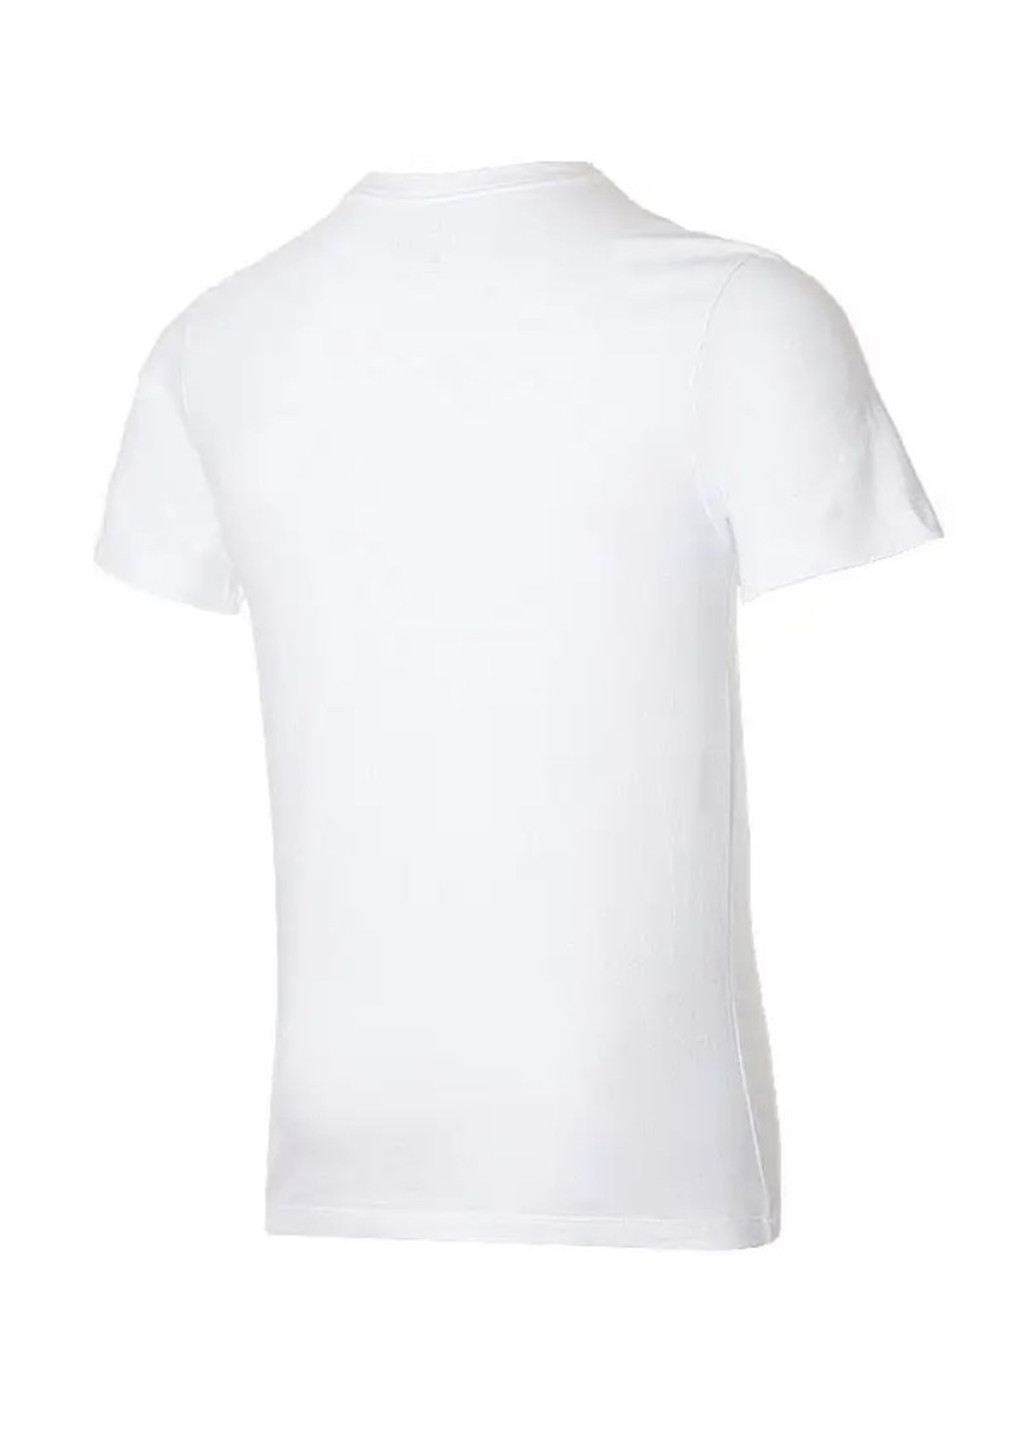 Біла футболка ar5006-100_2024 Nike M NSW TEE JUST DO IT SWOOSH